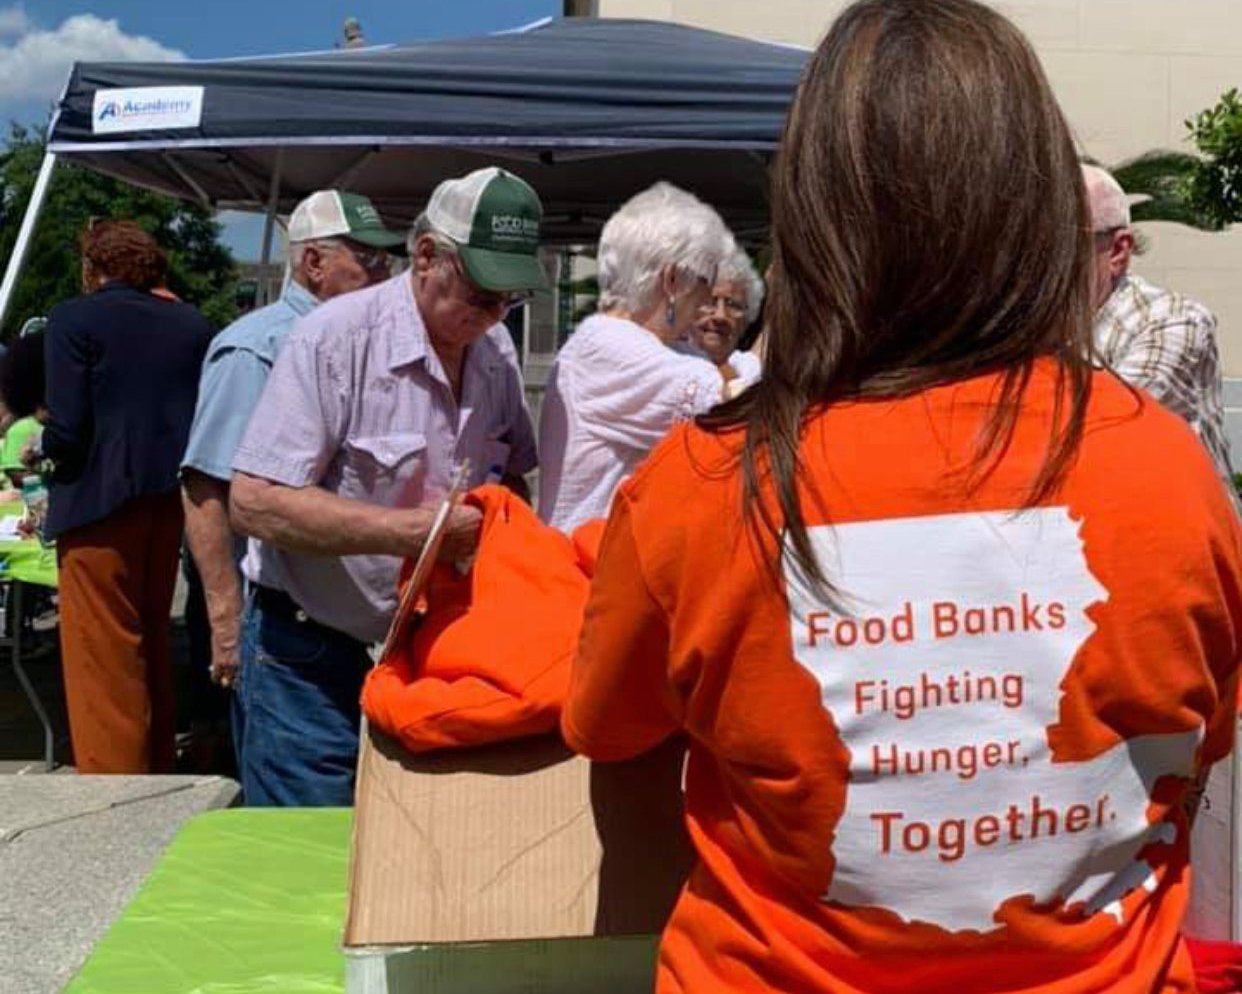 Fighting Senior Hunger through Food Banks